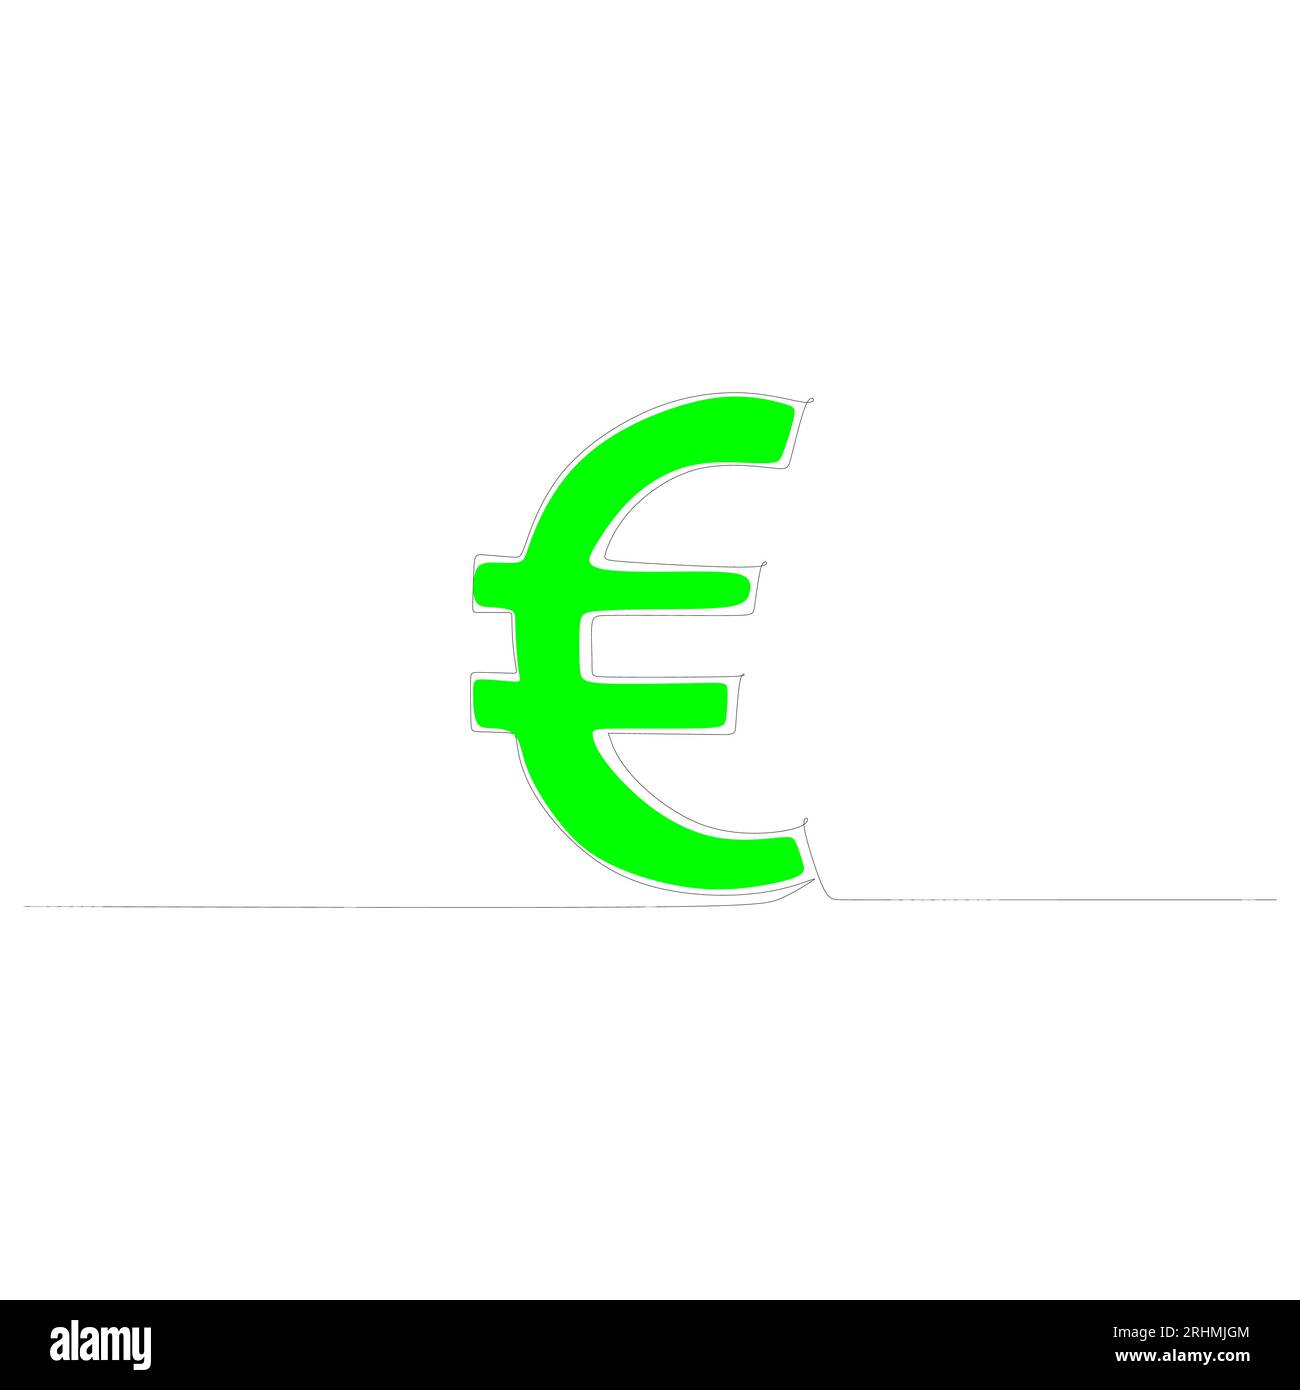 Einzeilige Zeichnung des grünen Euro-Geldsymbols auf weißem Hintergrund. Stock Vektor